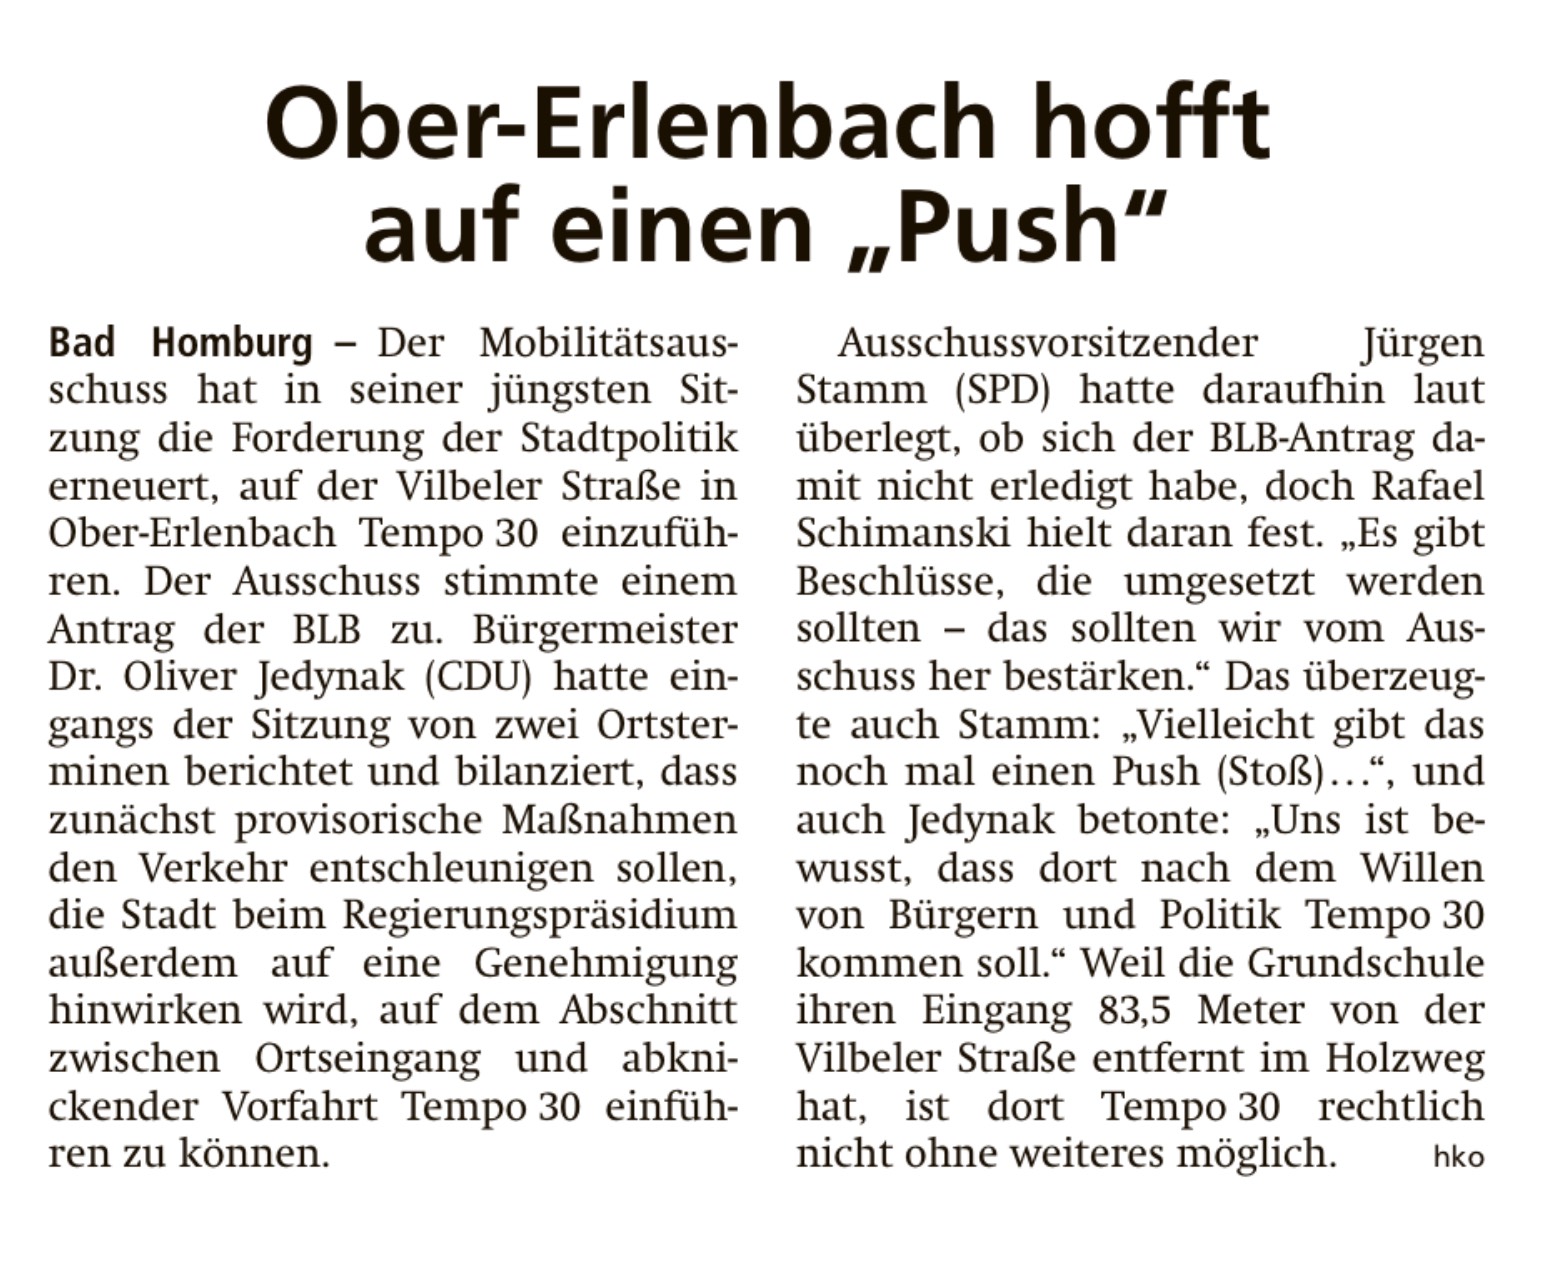 Ober-Ehrlenbach hofft auf einen PUSH. (Quelle: Taunus Zeitung vom 24.01.2022) 